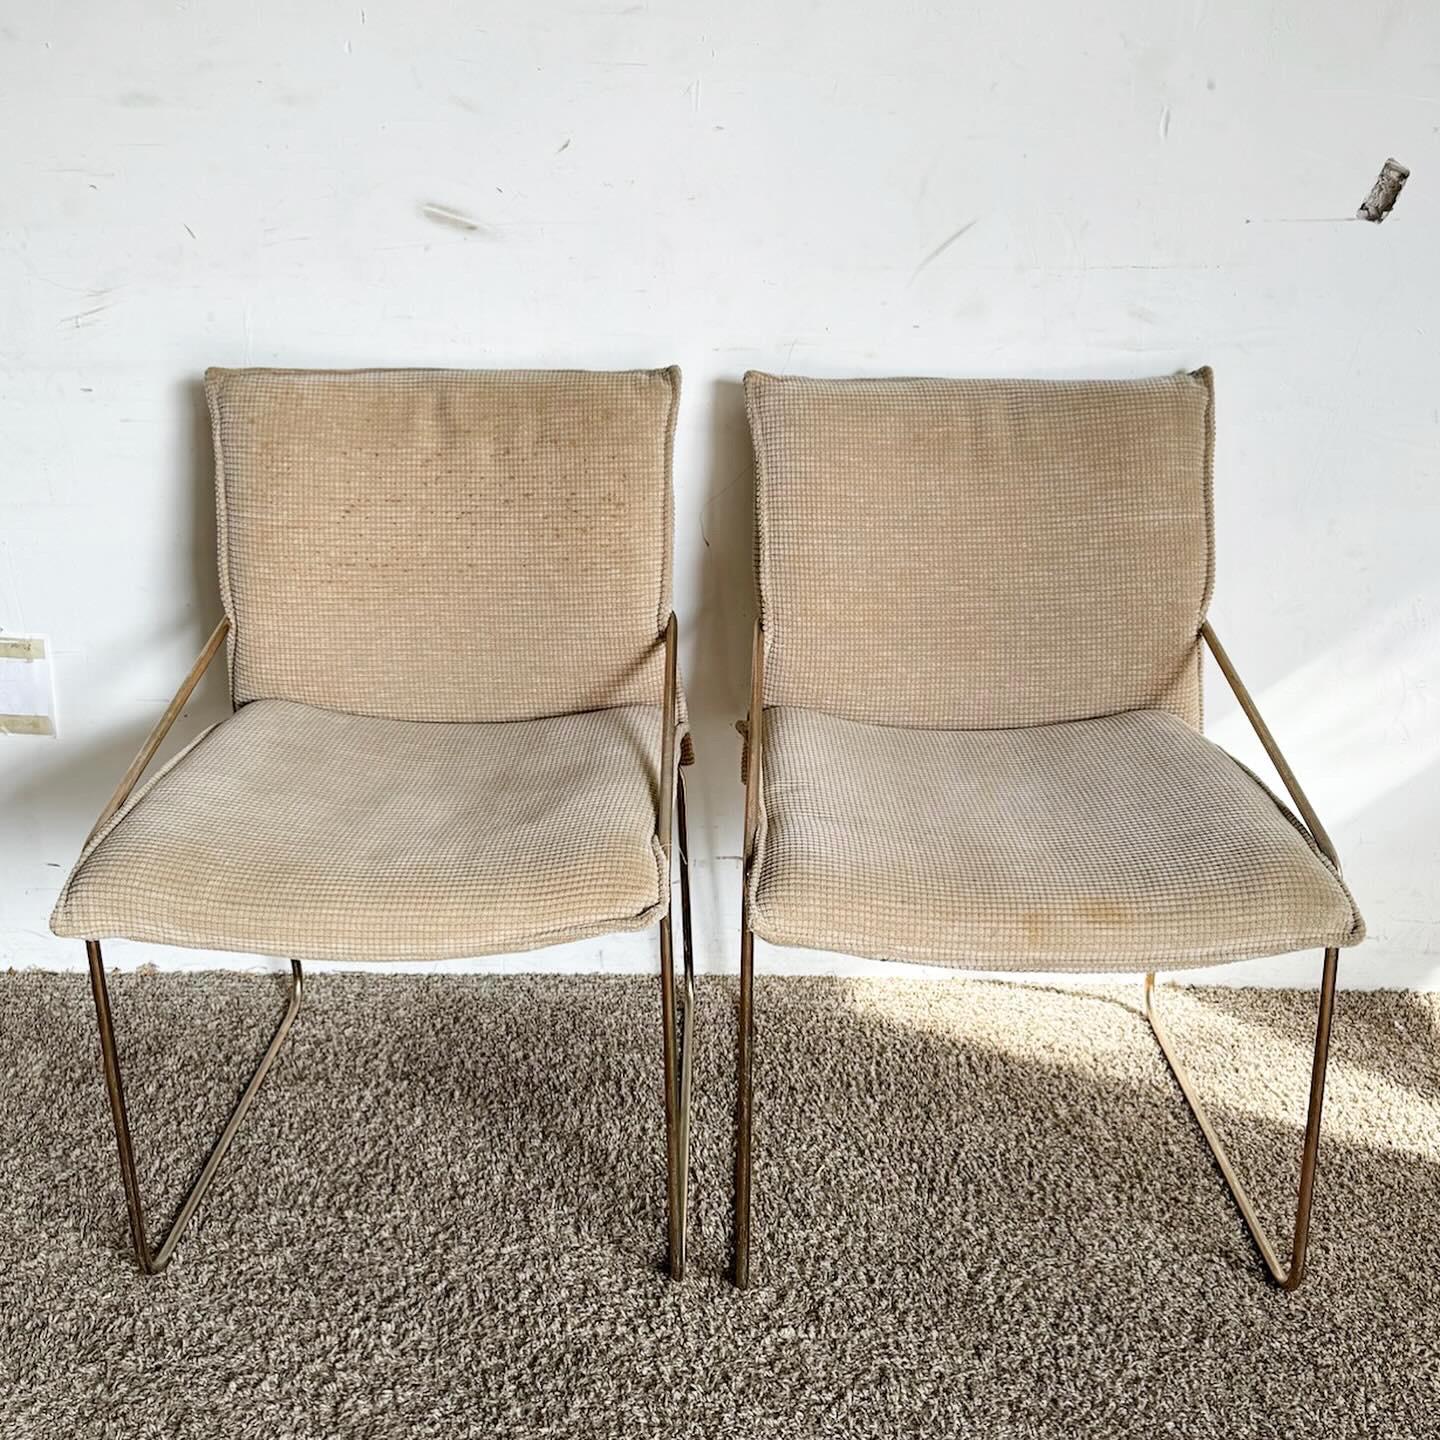 Die postmodernen, messingfarbenen Metall-Esszimmerstühle der Firma Otto Gerdau im Viererset bringen postmoderne Eleganz in Ihren Essbereich. Diese Stühle haben ein elegantes Metallgestell mit luxuriöser Messingoberfläche, das die Handwerkskunst und